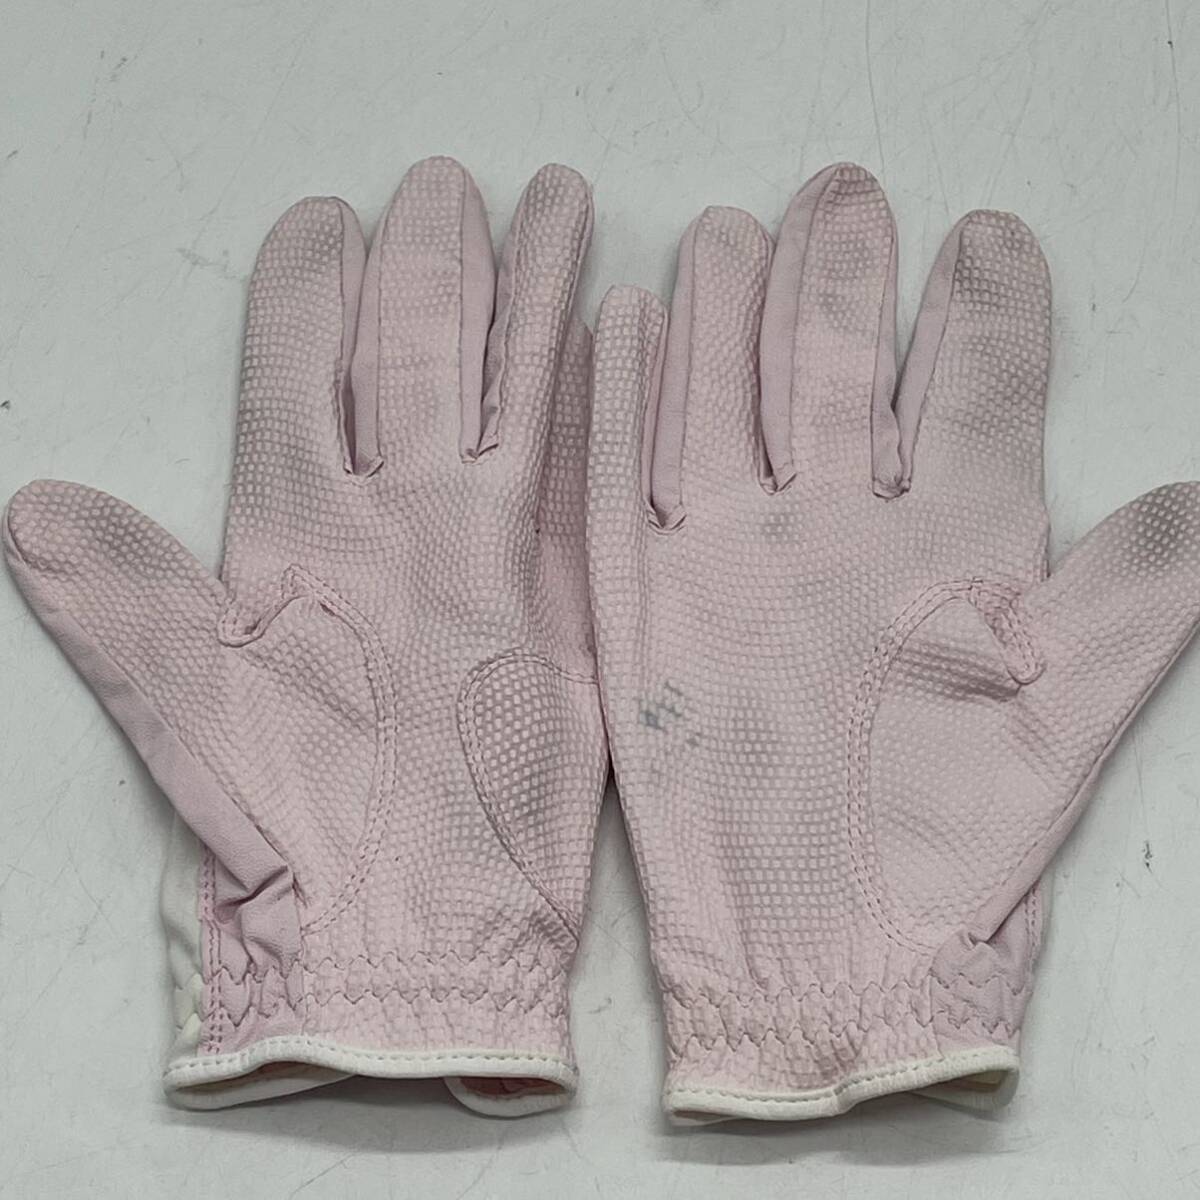 KO1905*3 позиций комплект женский для Golf перчатка Callaway Callaway 20.19.XXIO 19. не использовался товар содержит 